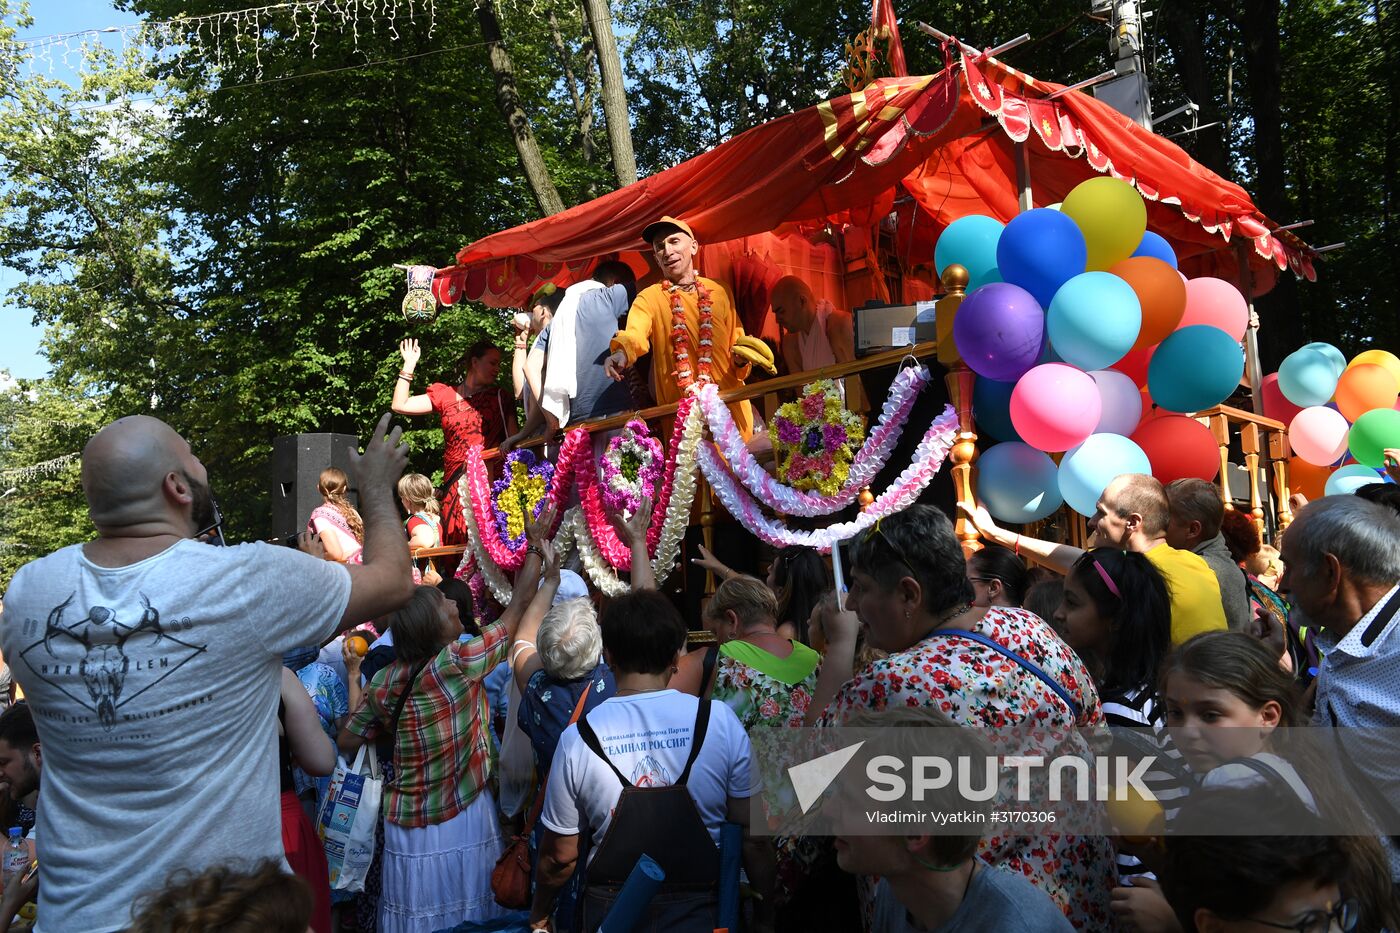 India's Independence Day celebrated in Sokolniki Park